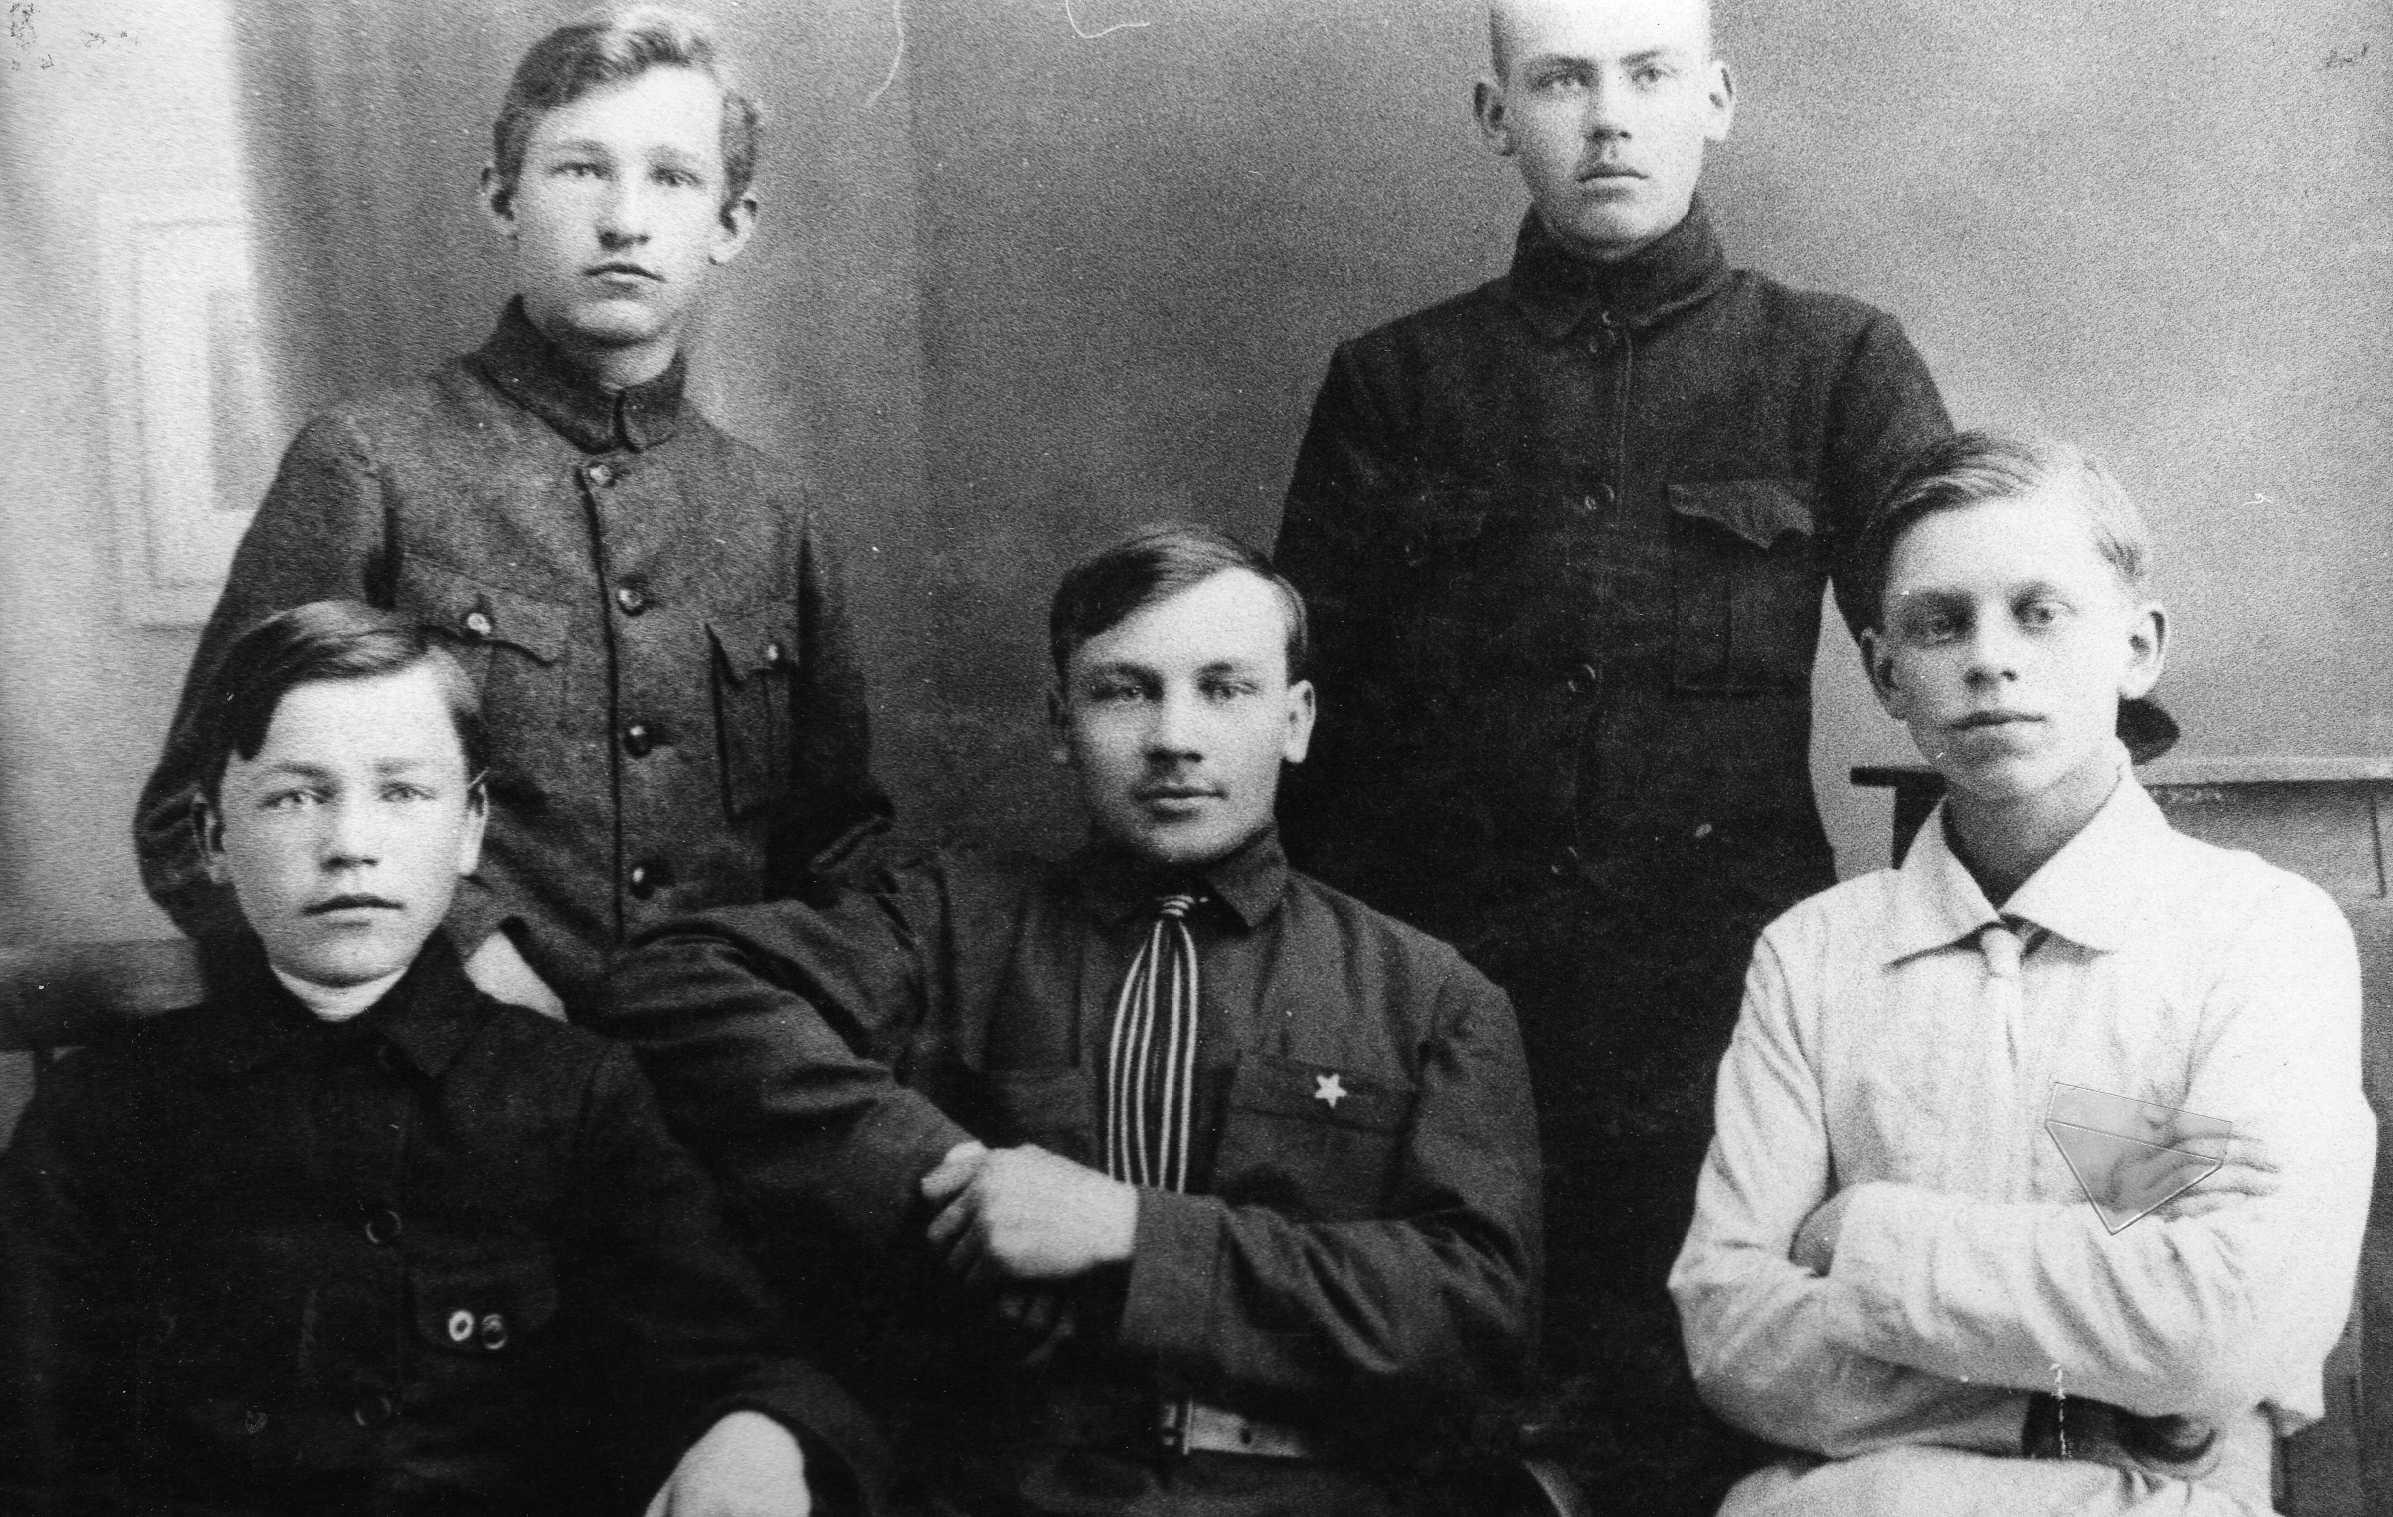 Biržų gimnazijos Aušrininkų draugijos nariai. Pirmininkas – būsimasis profesorius, agronomas Petras Vasinauskas (stovi pirmas iš kairės). 1924–1925 m.